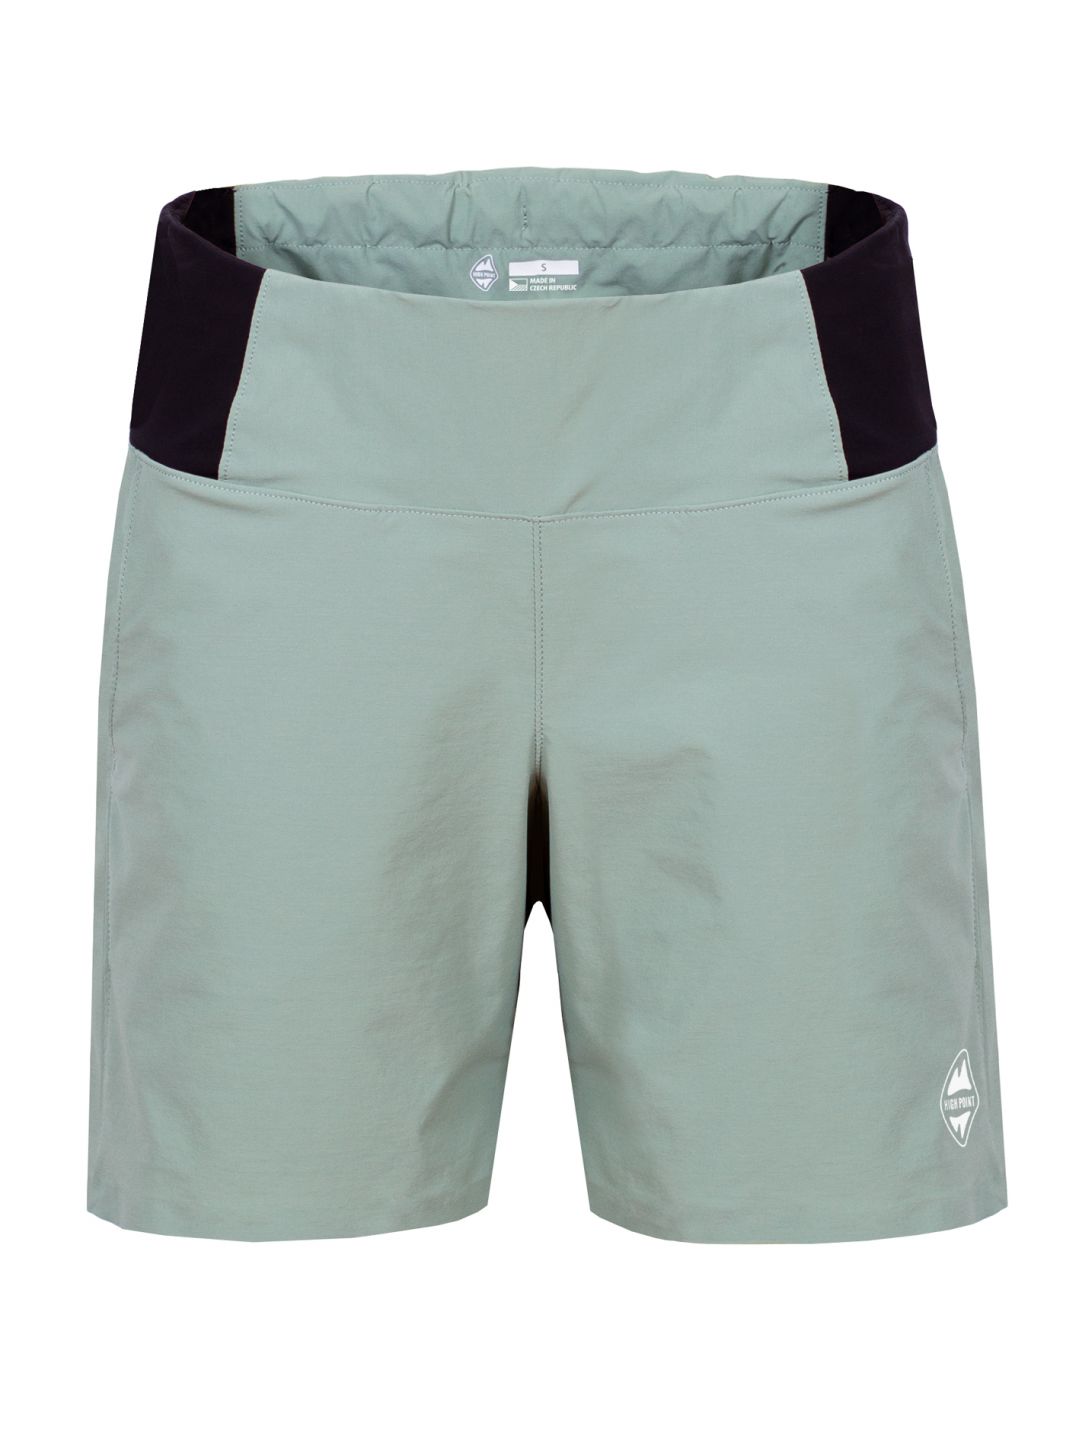 HIGH POINT Play lady shorts Green Bay varianta: XL